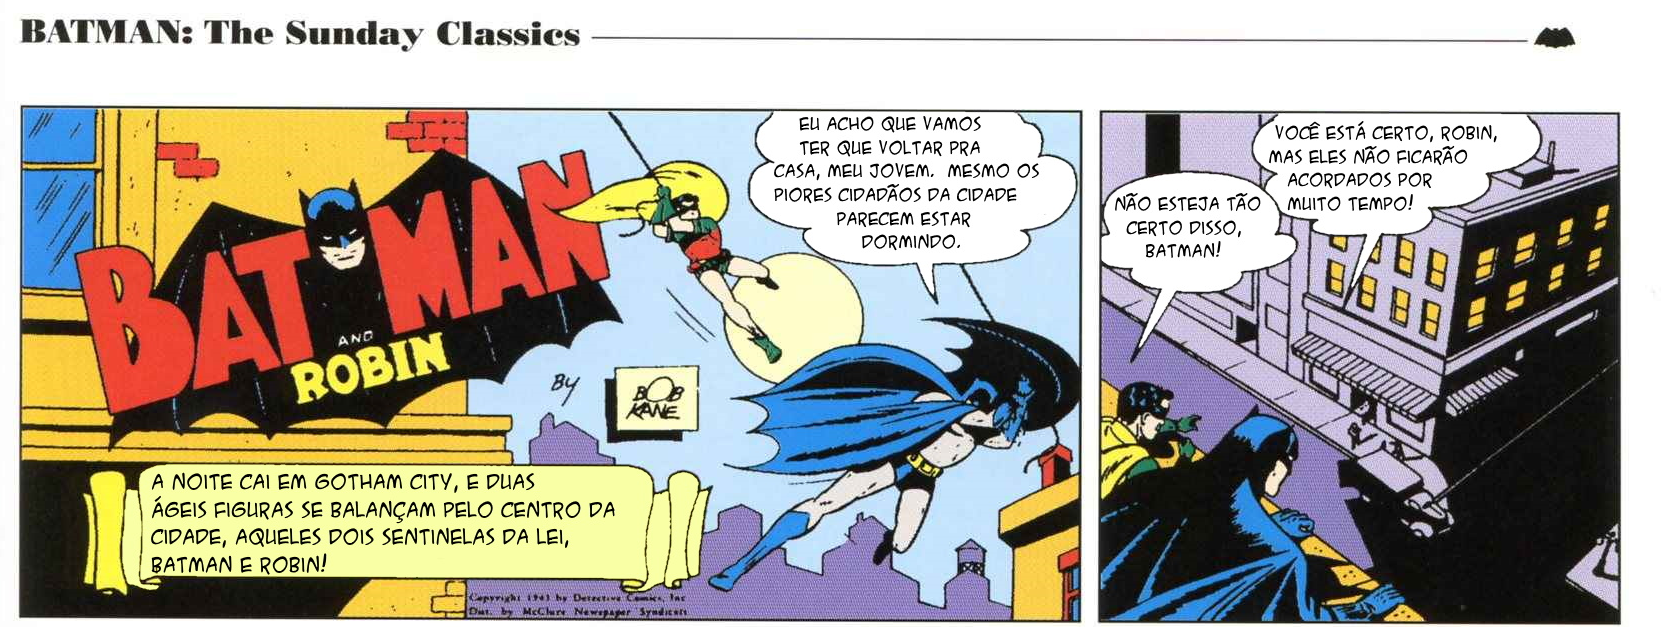 1 - Batman Vintage 1a